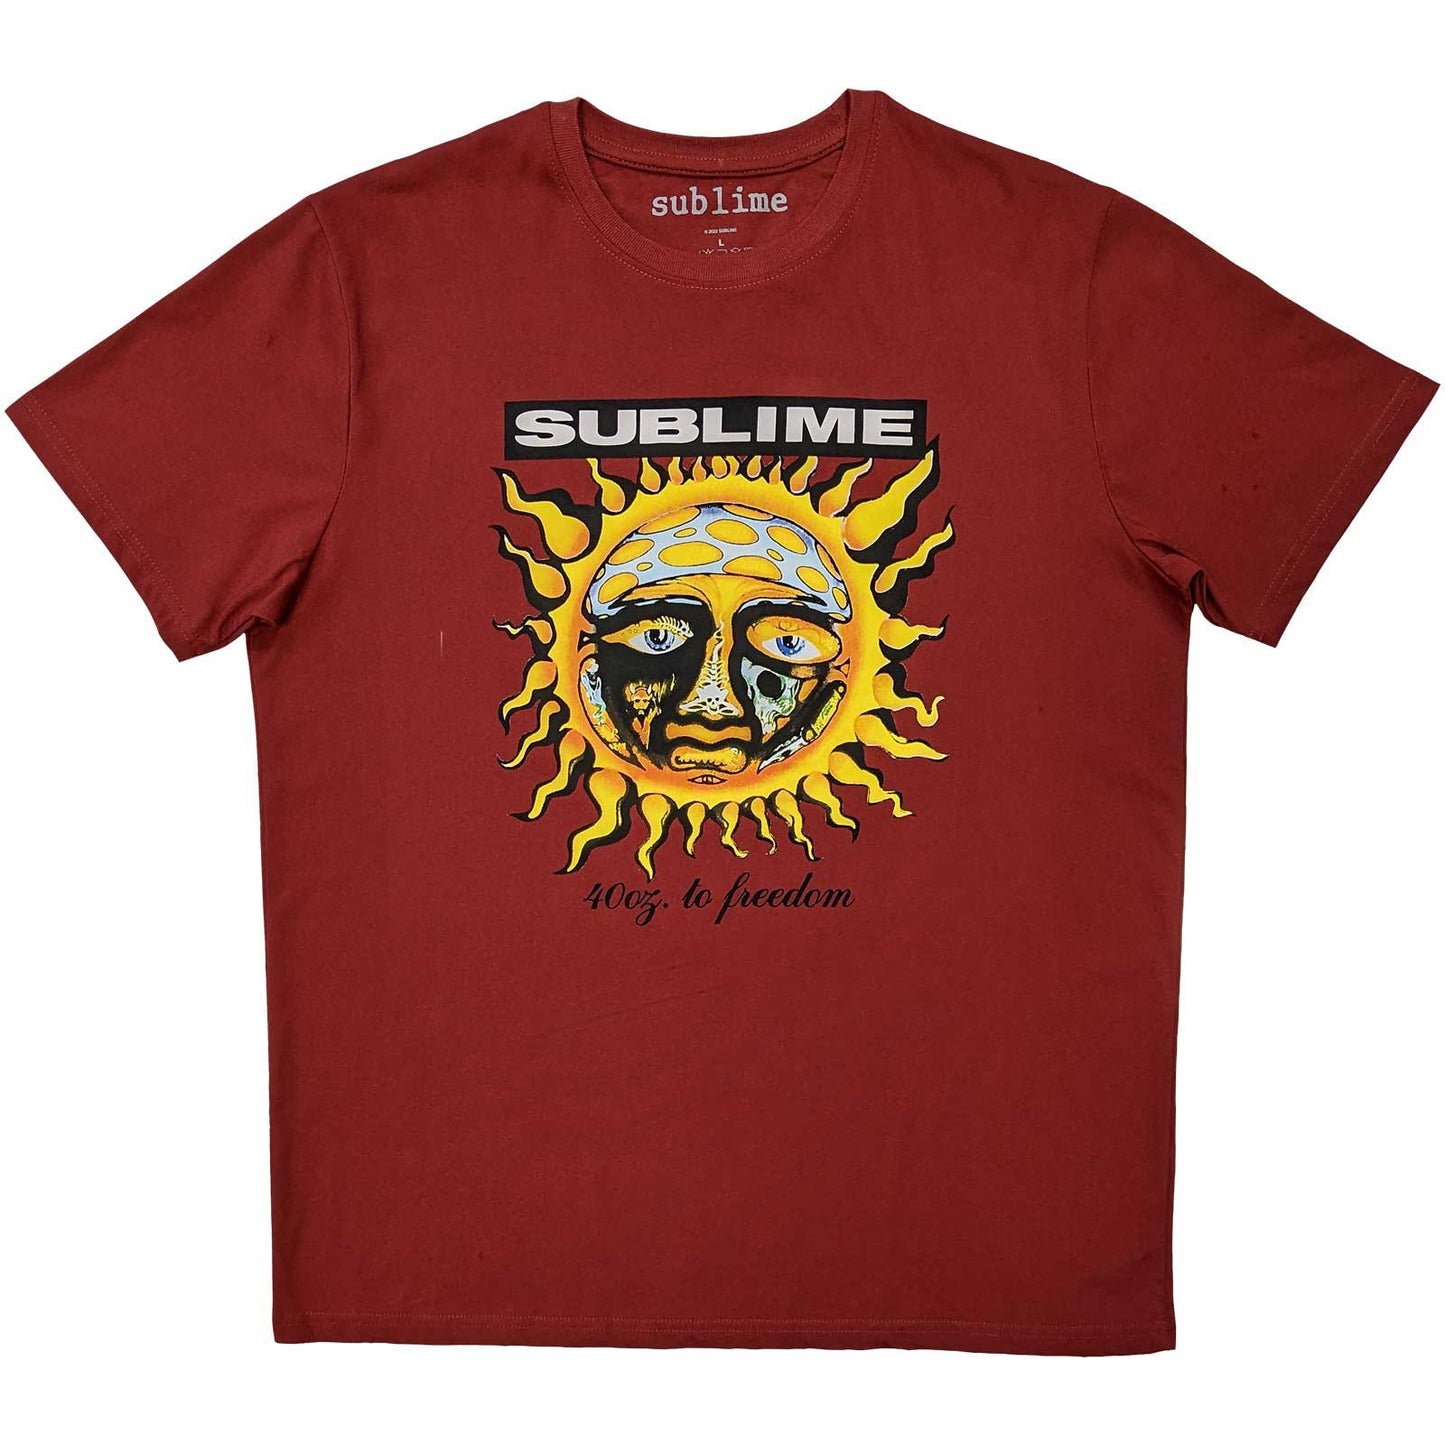 Sublime T-Shirt: GRN 40 Oz